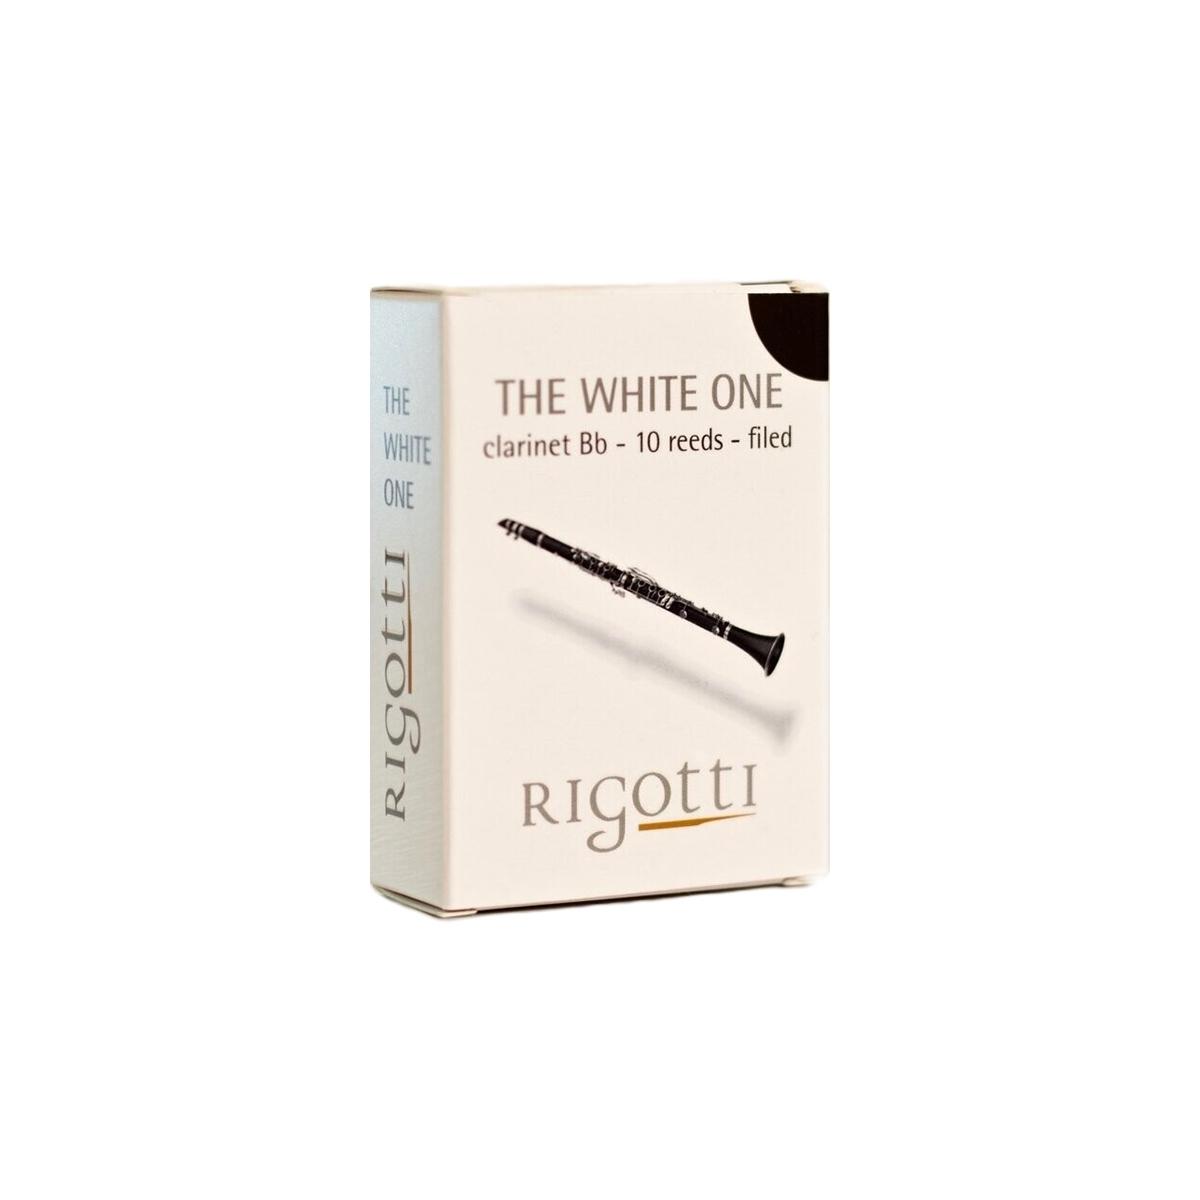 Rigotti The White One ancia clarinetto sib 2